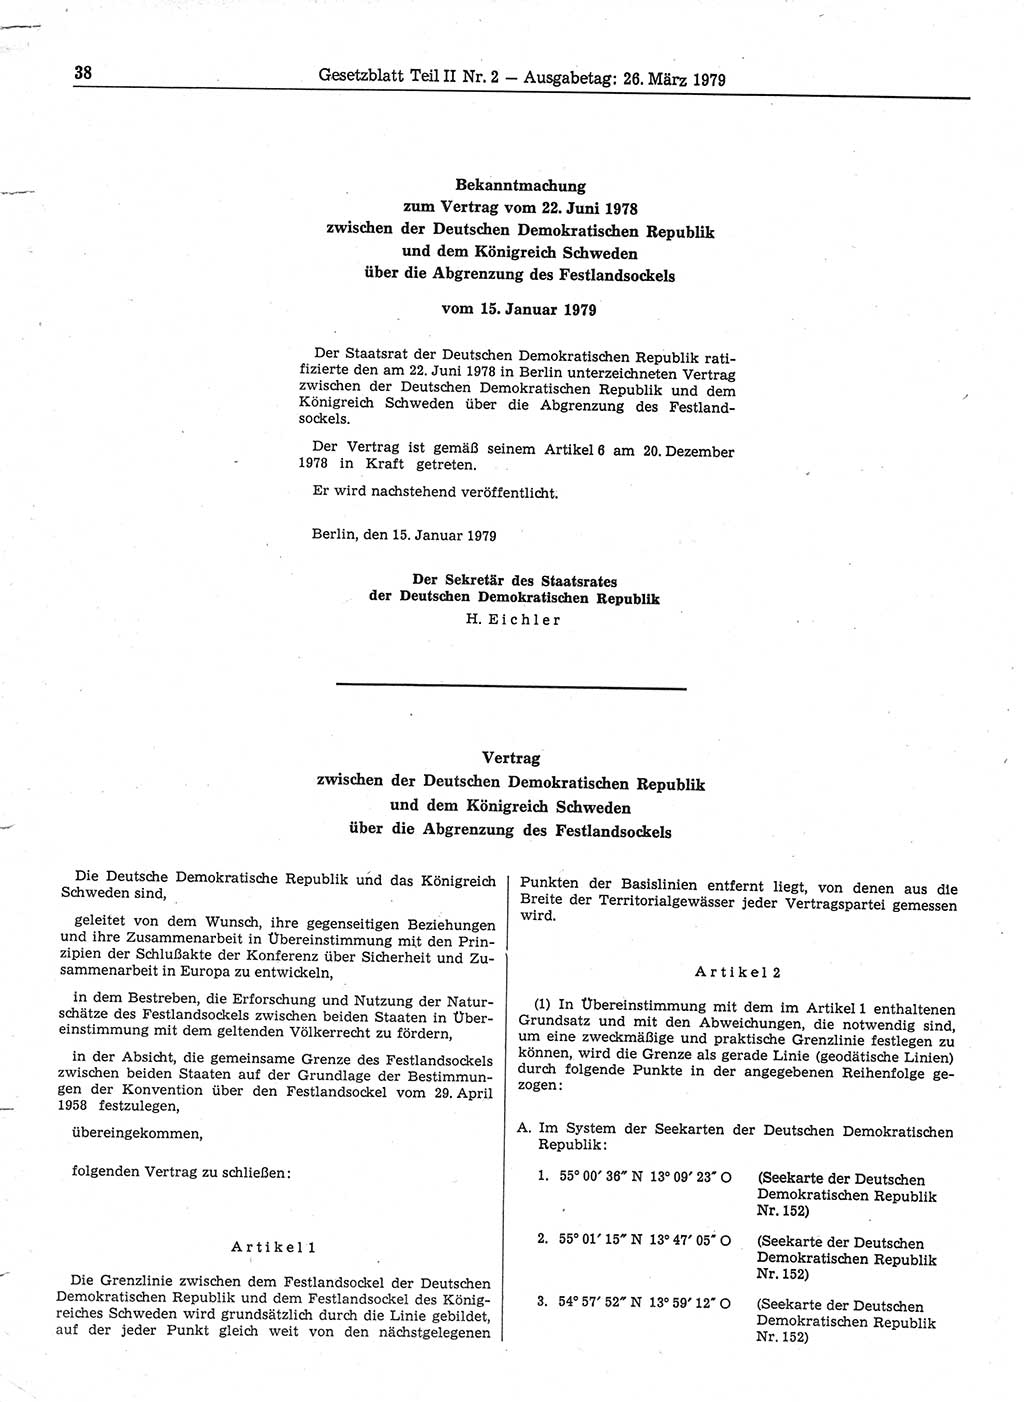 Gesetzblatt (GBl.) der Deutschen Demokratischen Republik (DDR) Teil ⅠⅠ 1979, Seite 38 (GBl. DDR ⅠⅠ 1979, S. 38)